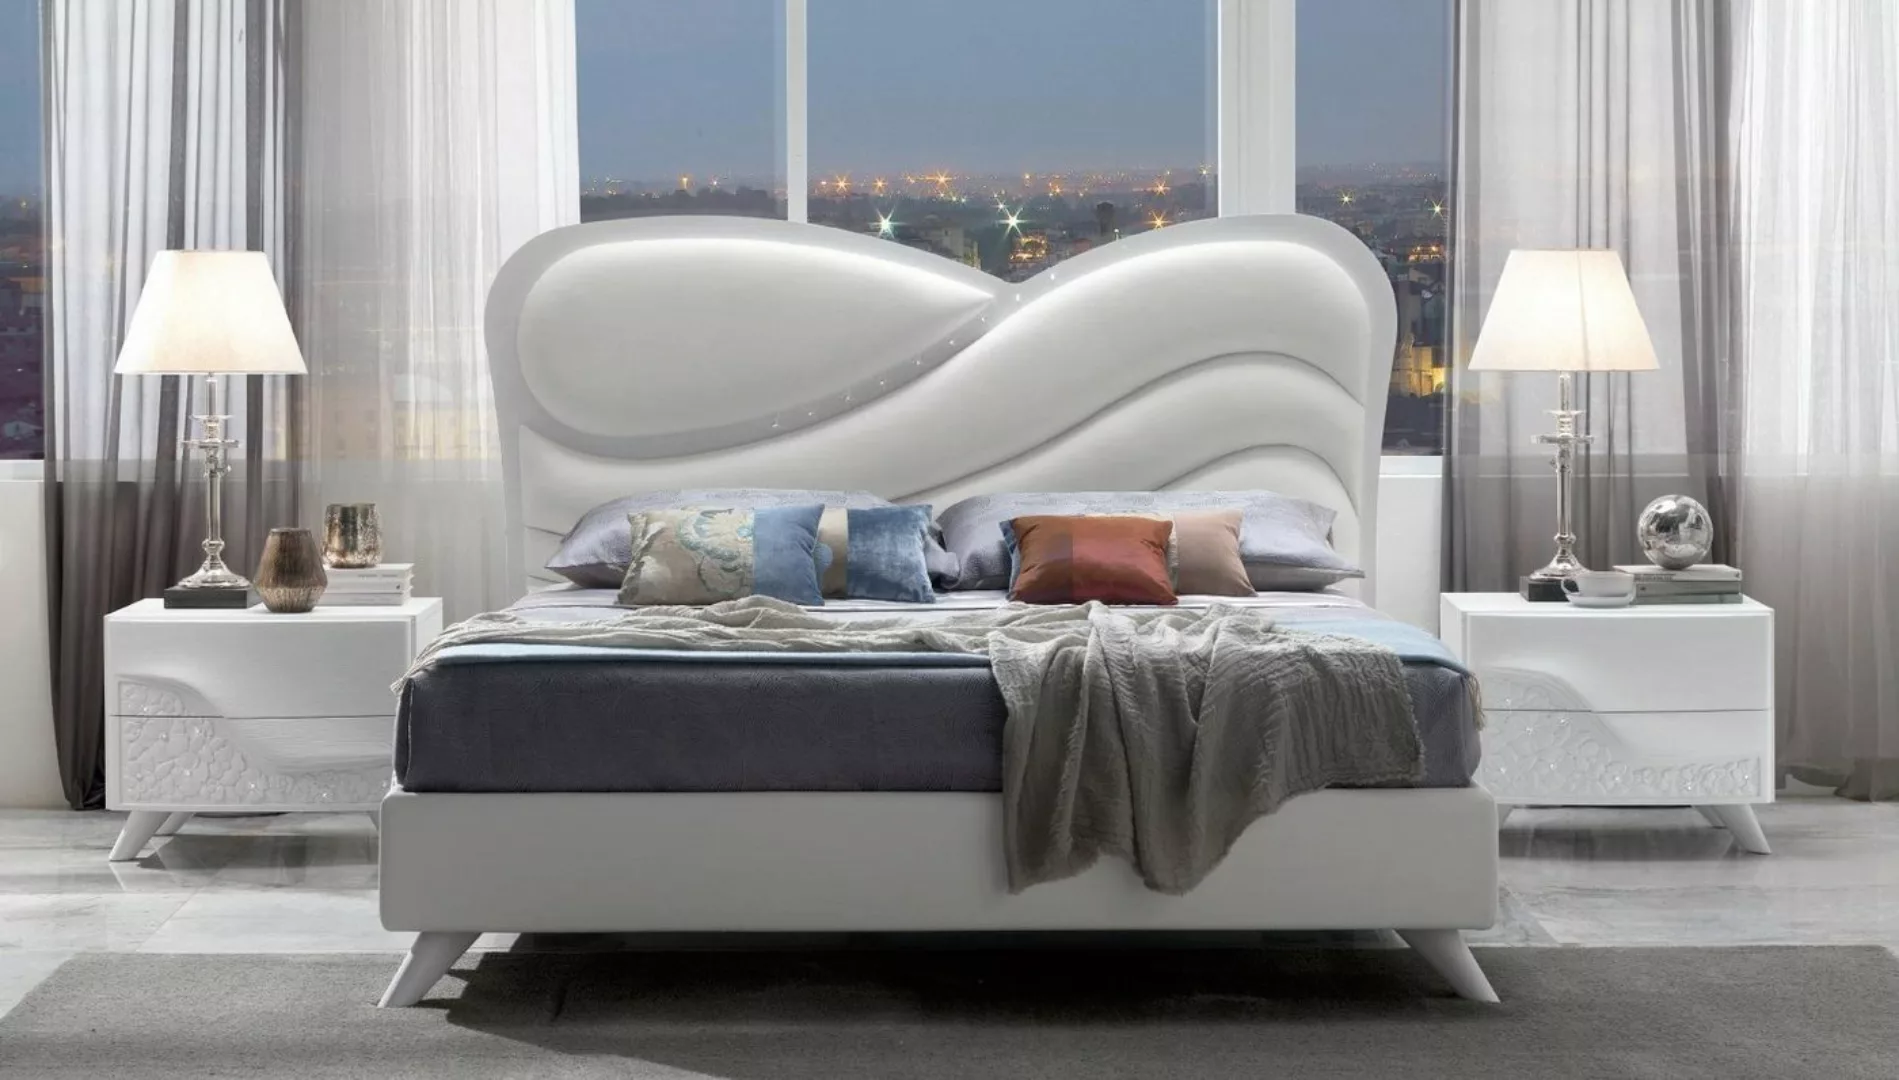 JVmoebel Bett Bett Polster Design Luxus Doppel Hotel Betten Schlaf Zimmer H günstig online kaufen